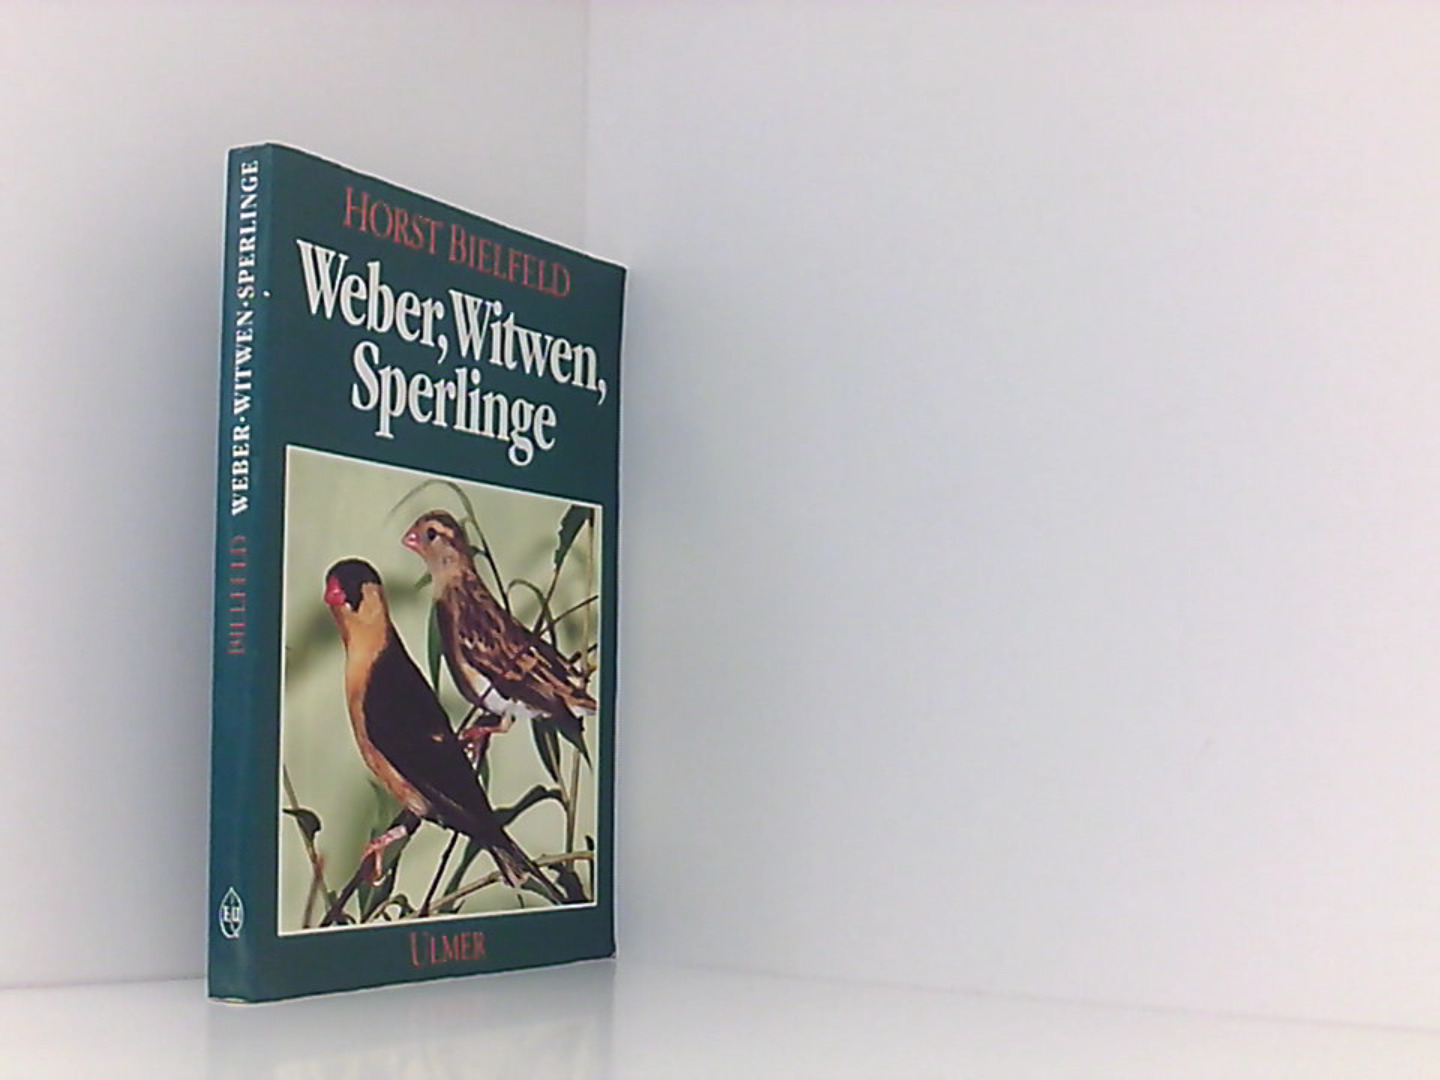 Weber, Witwen, Sperlinge: als Volierenvögel - Bielfeld, Horst